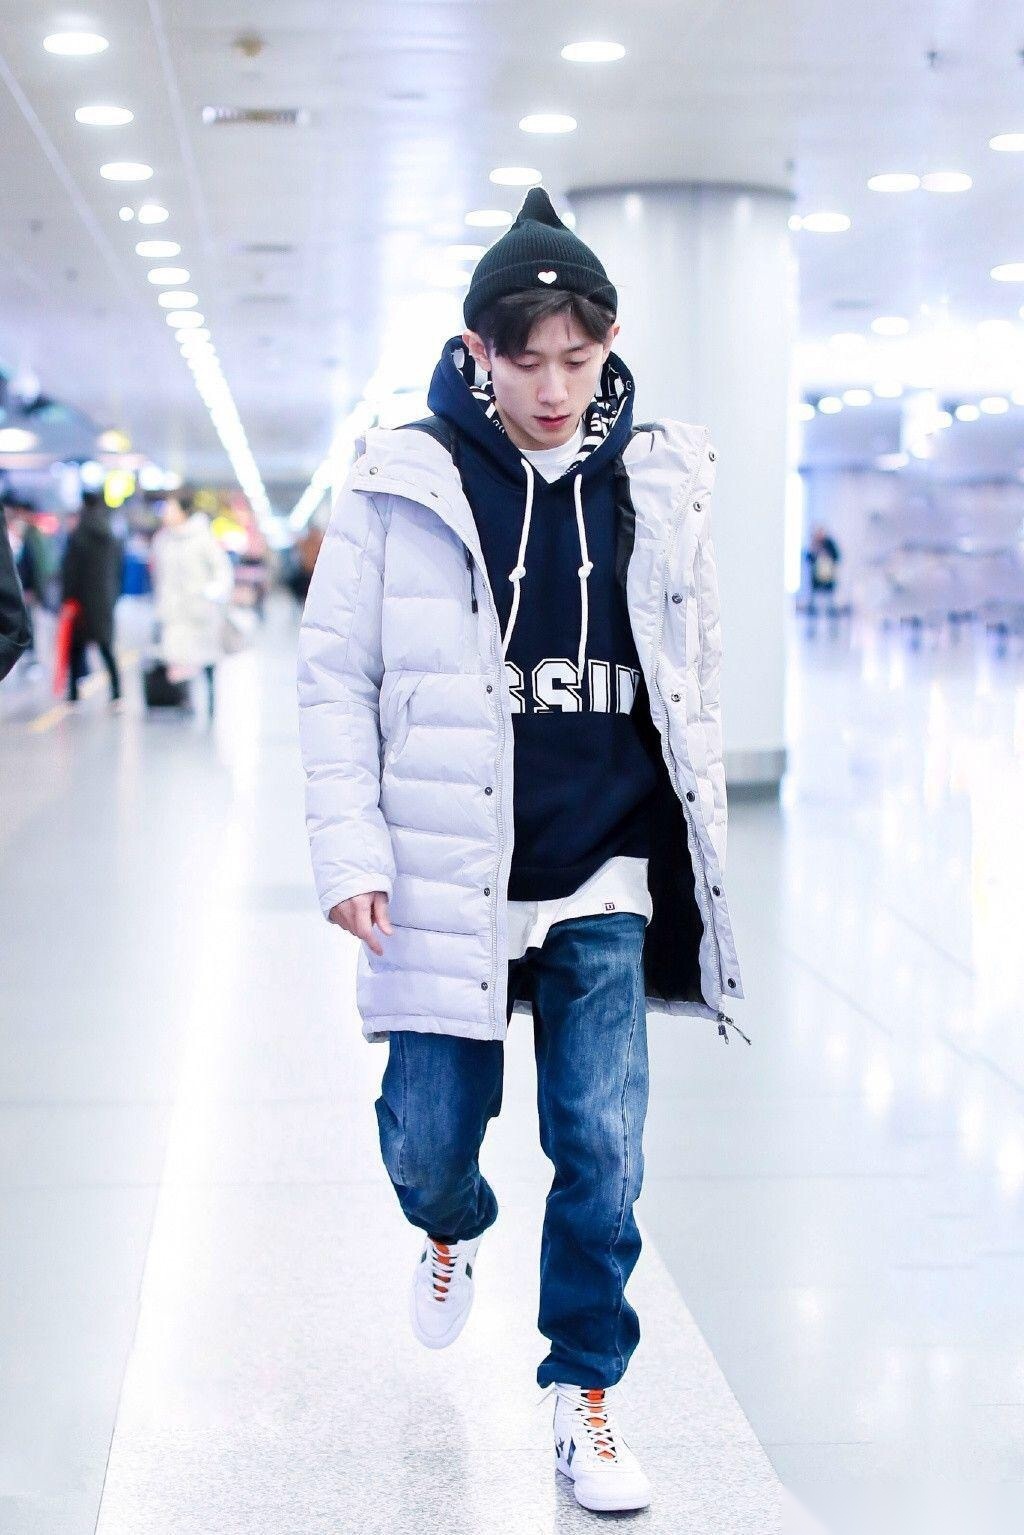 2018年12月8日,张一山现身北京机场,当天他穿白色羽绒服内搭深蓝色连